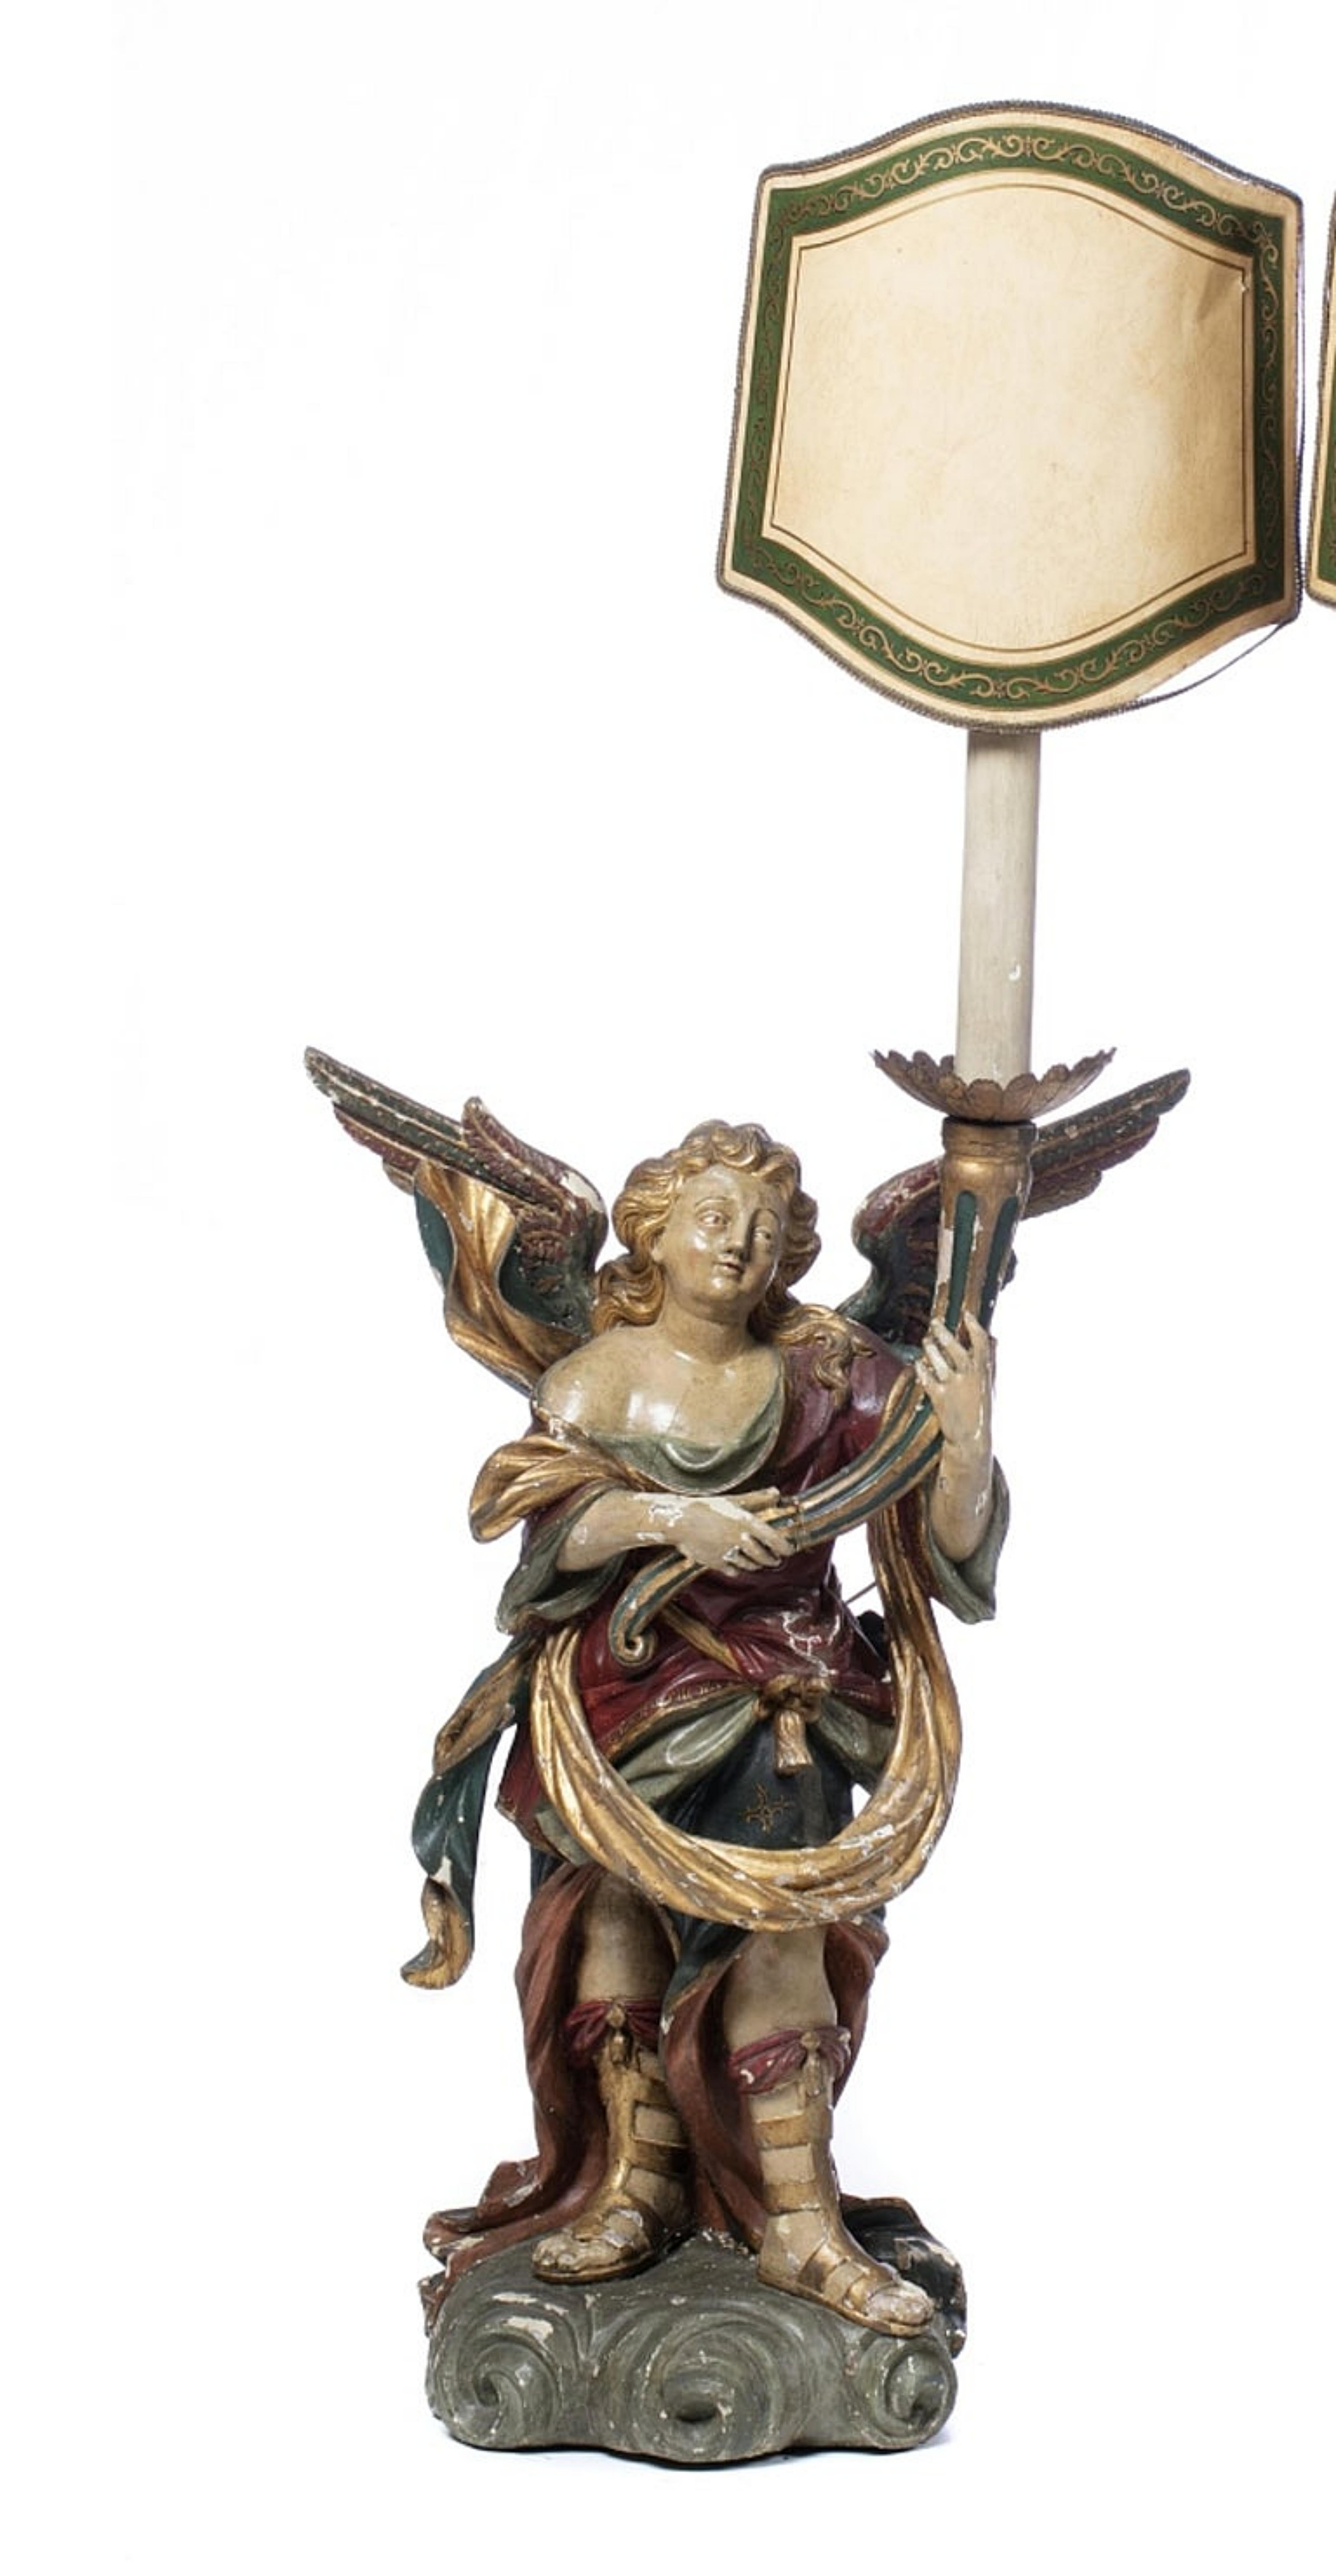 Paire de séraphins de candélabre portugais

19ème siècle 
en bois polychrome et doré. 
Les personnages sont représentés debout, tenant des cornes d'abondance. 
Adapté aux lampes. 
Petits défauts de polychromie. 
Dimensions : Hauteur : (sculpture) 90